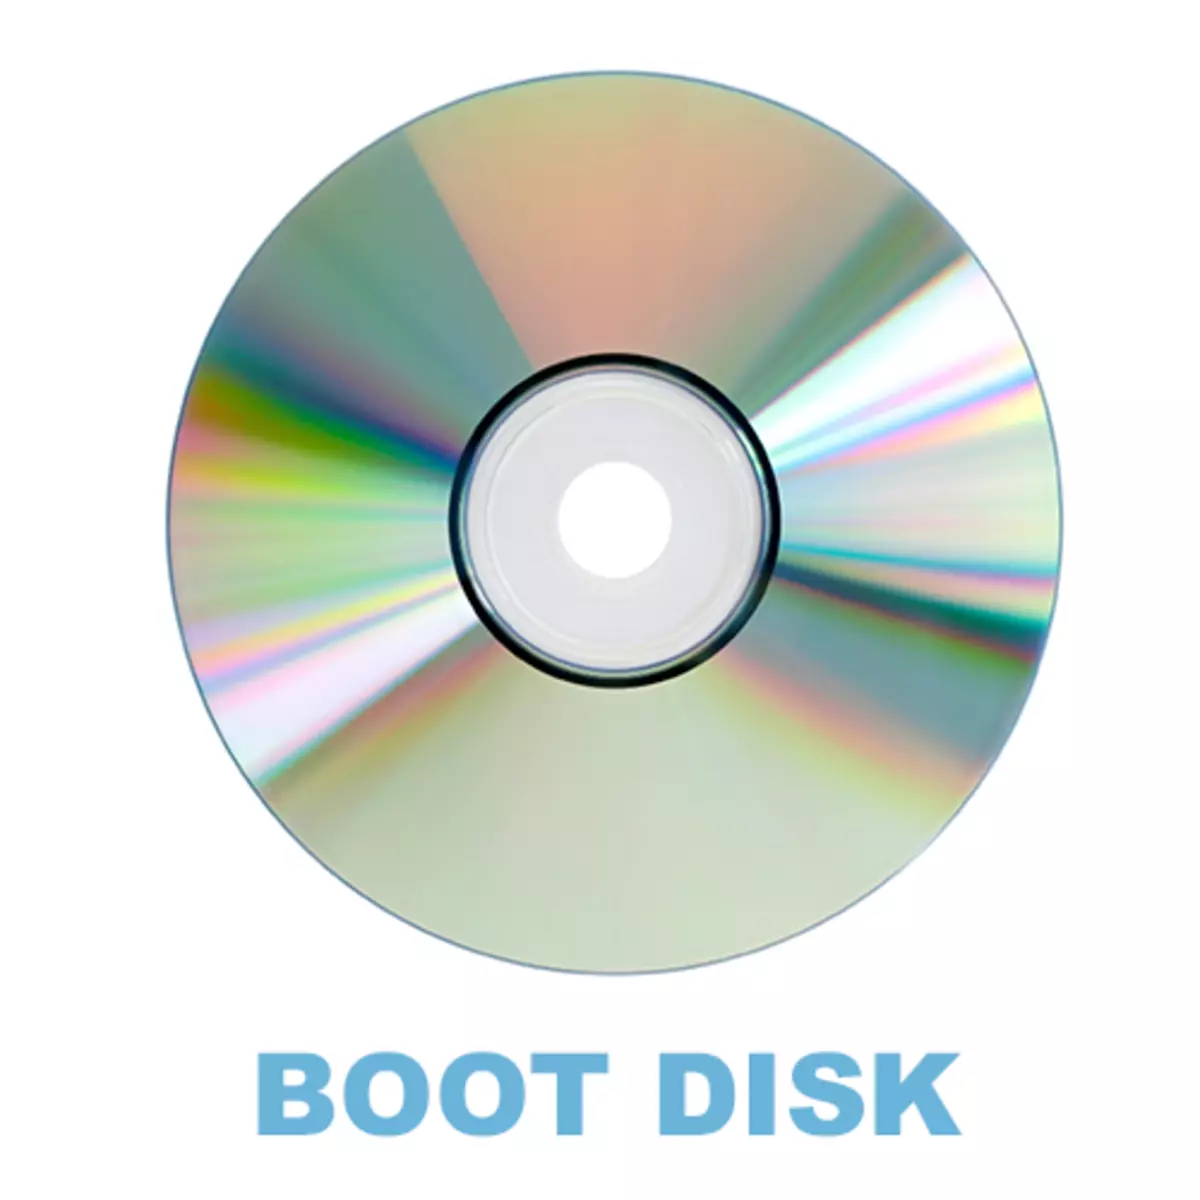 Programmer fir e Boot Disk ze kreéieren